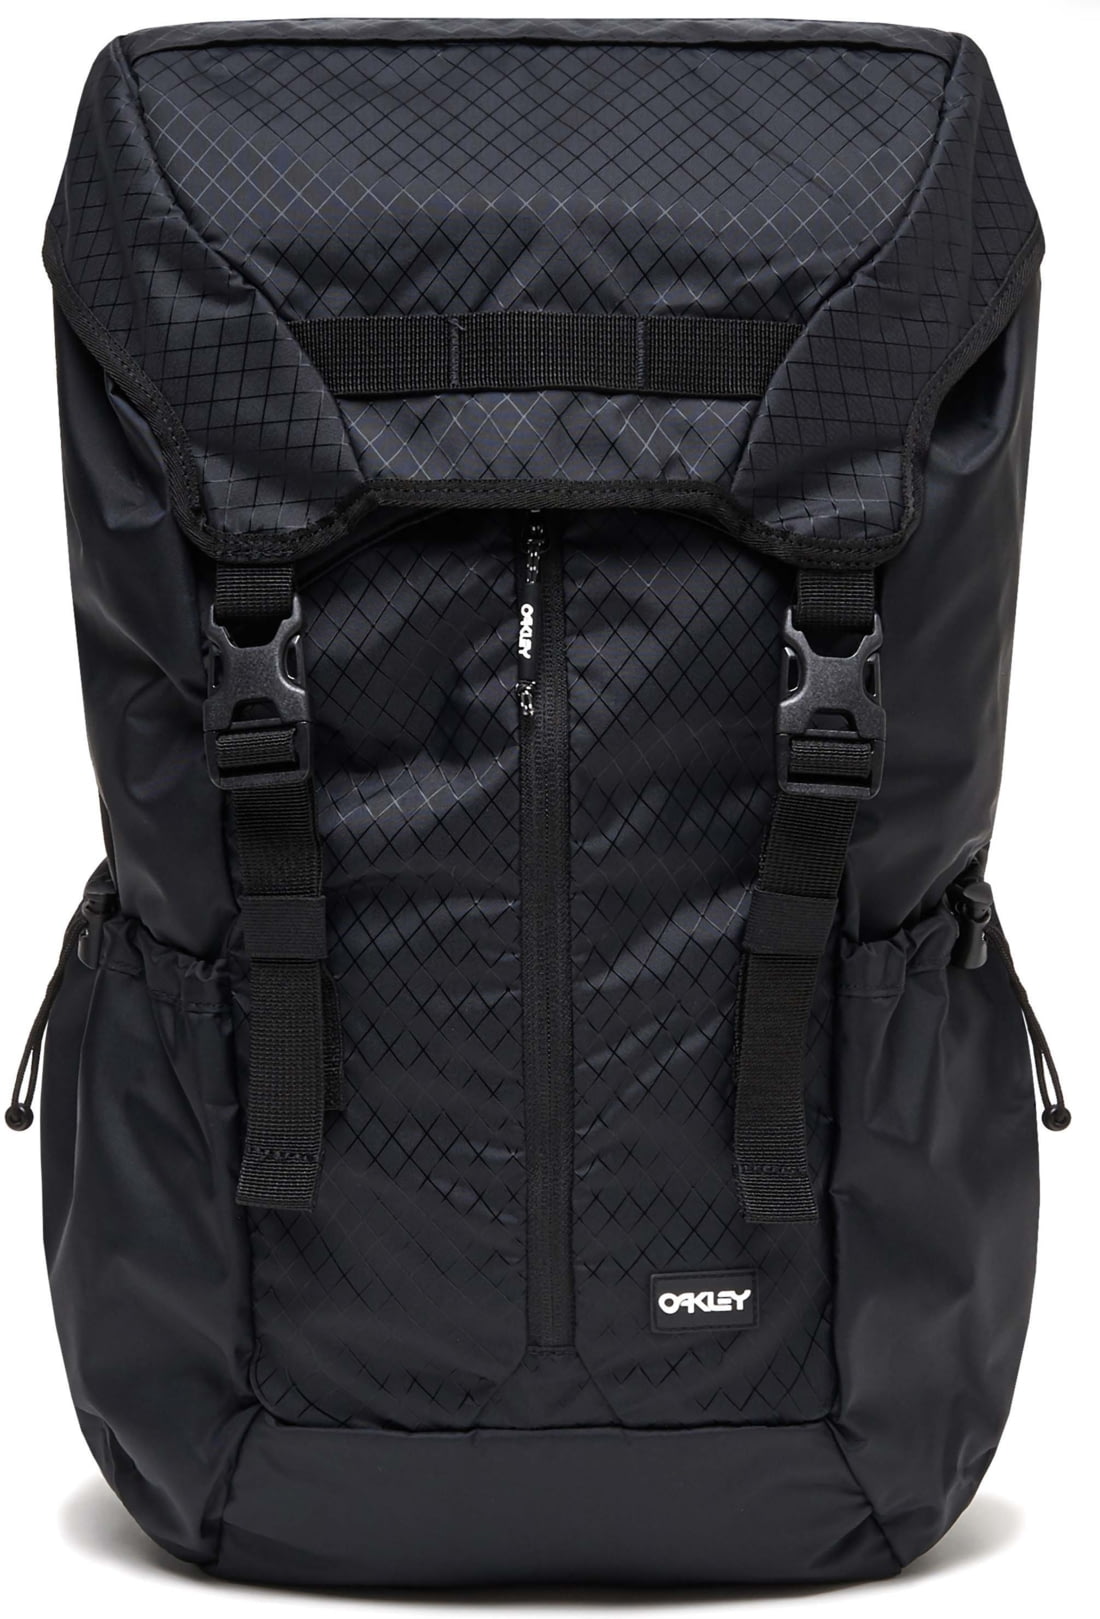 oakley voyager backpack